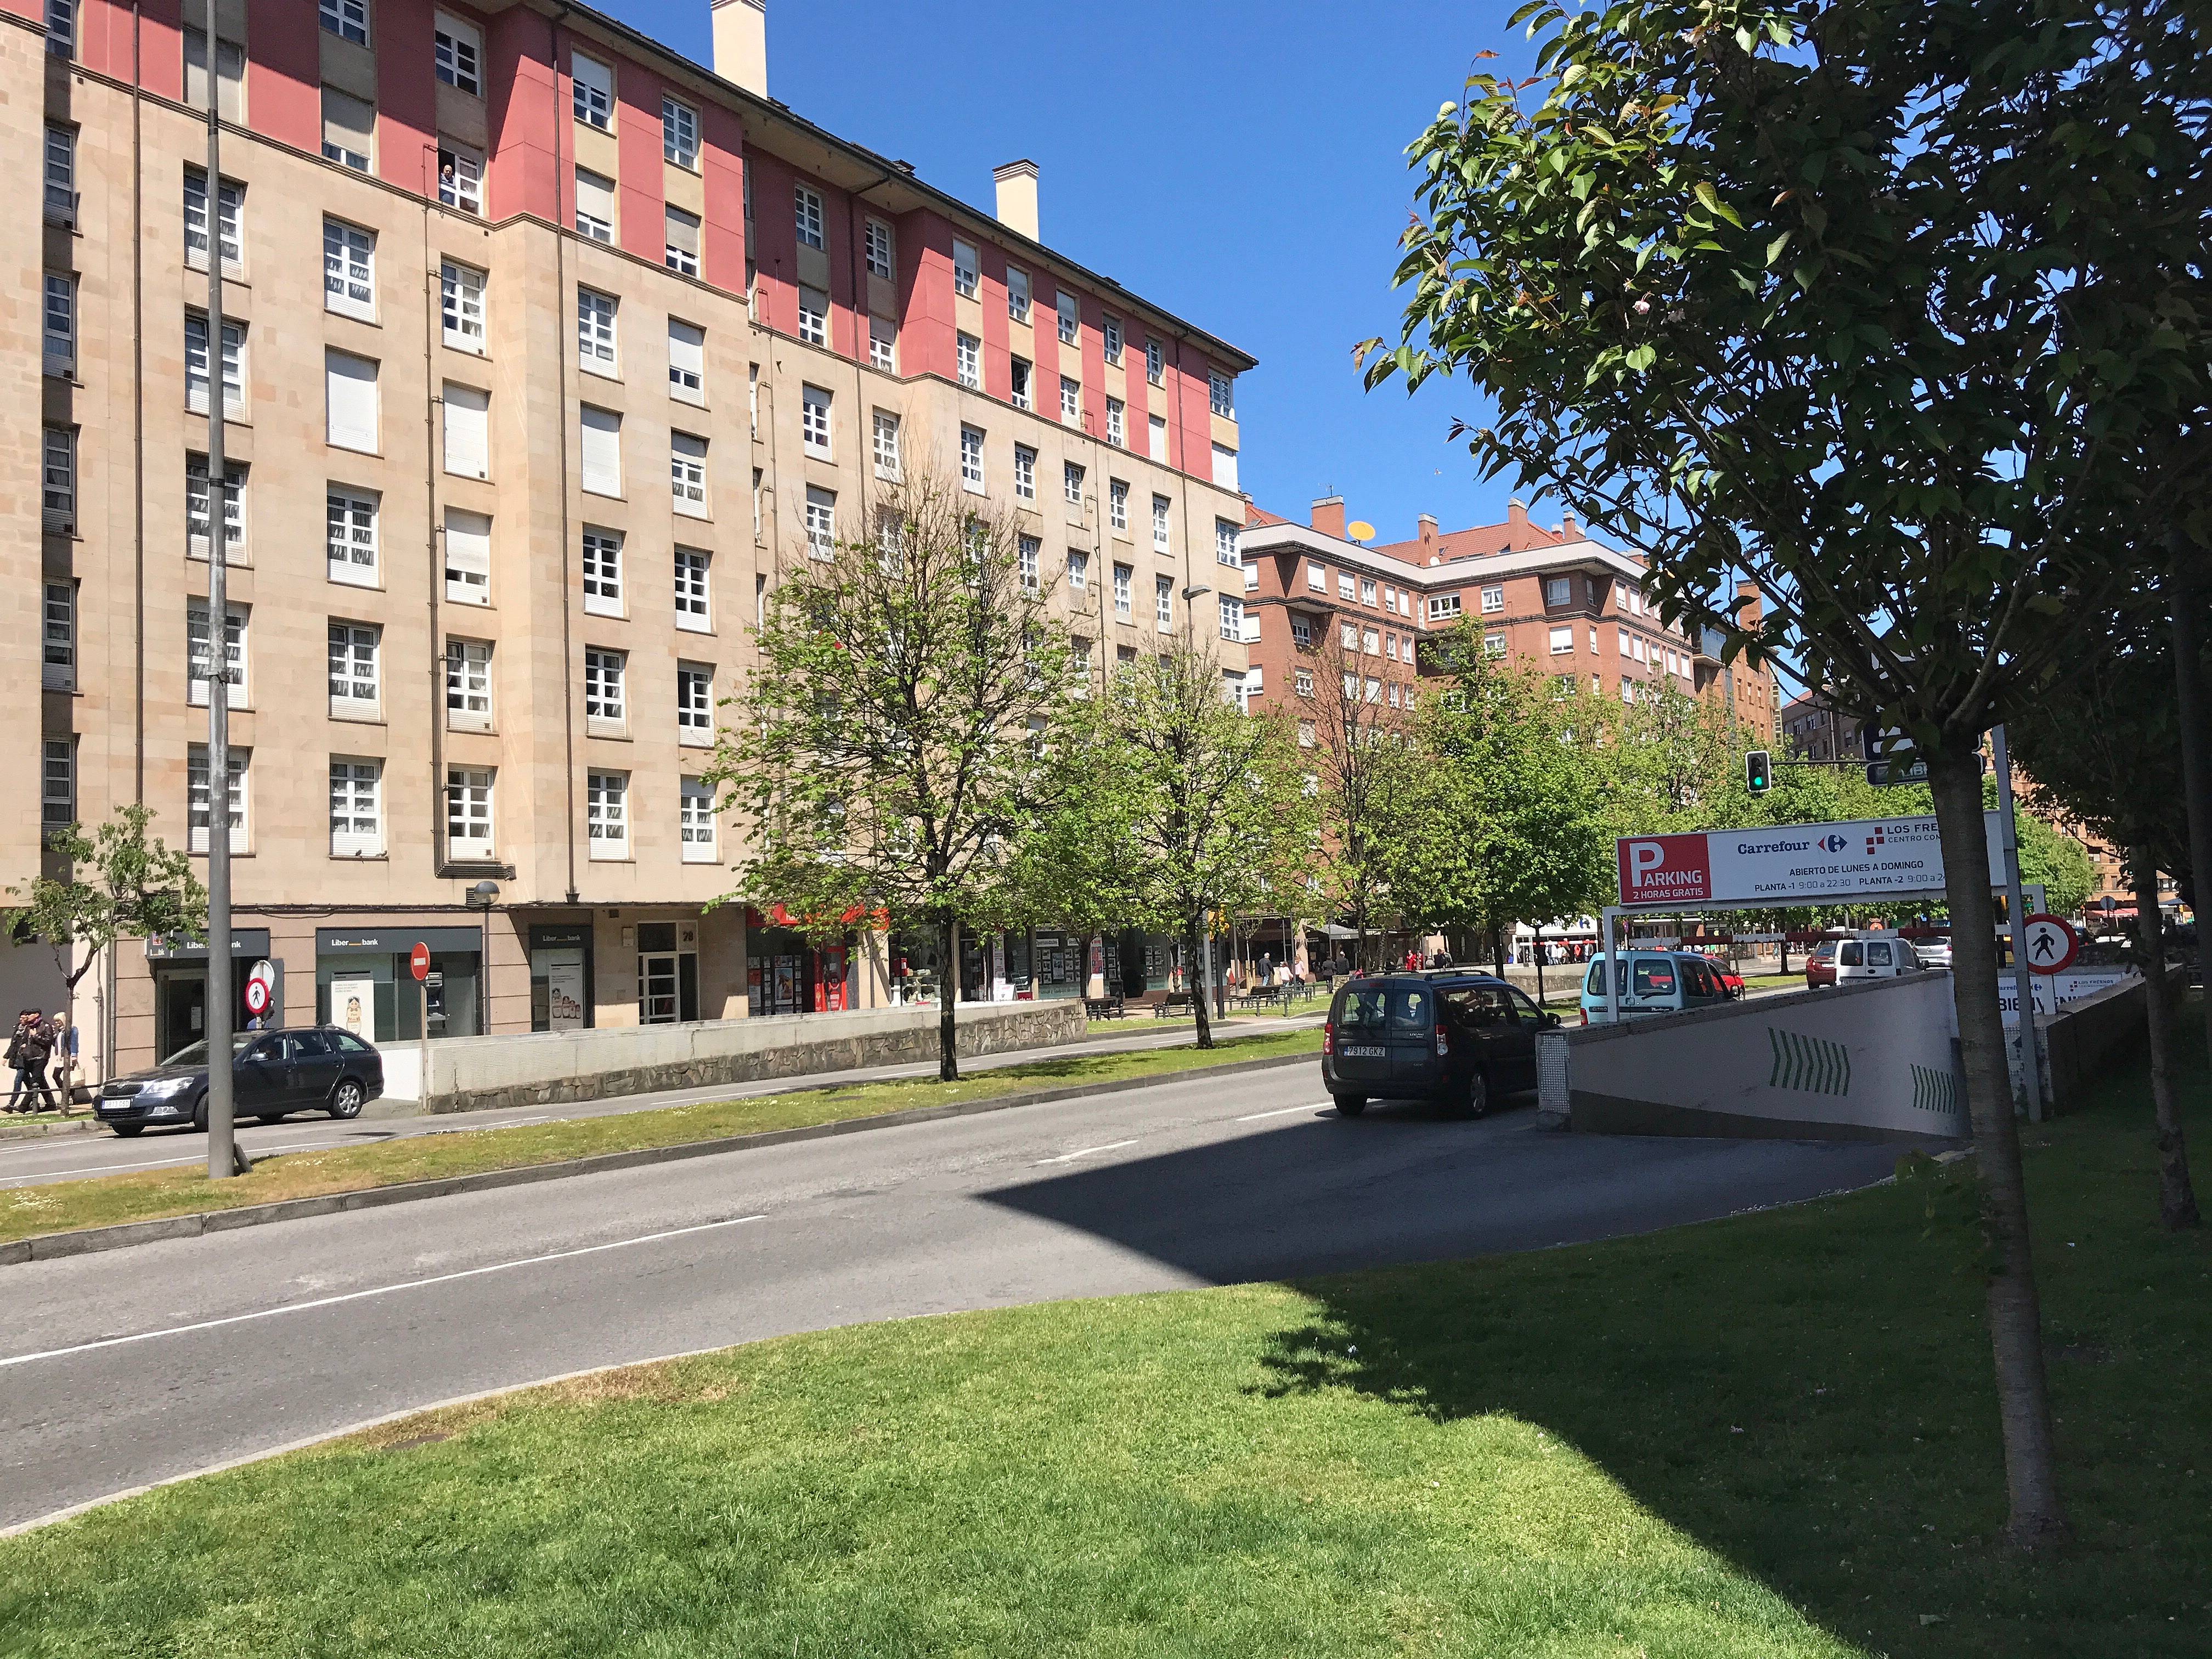 Alquiler apartamentos vacacionales en Gijón - Asturias y casas rurales